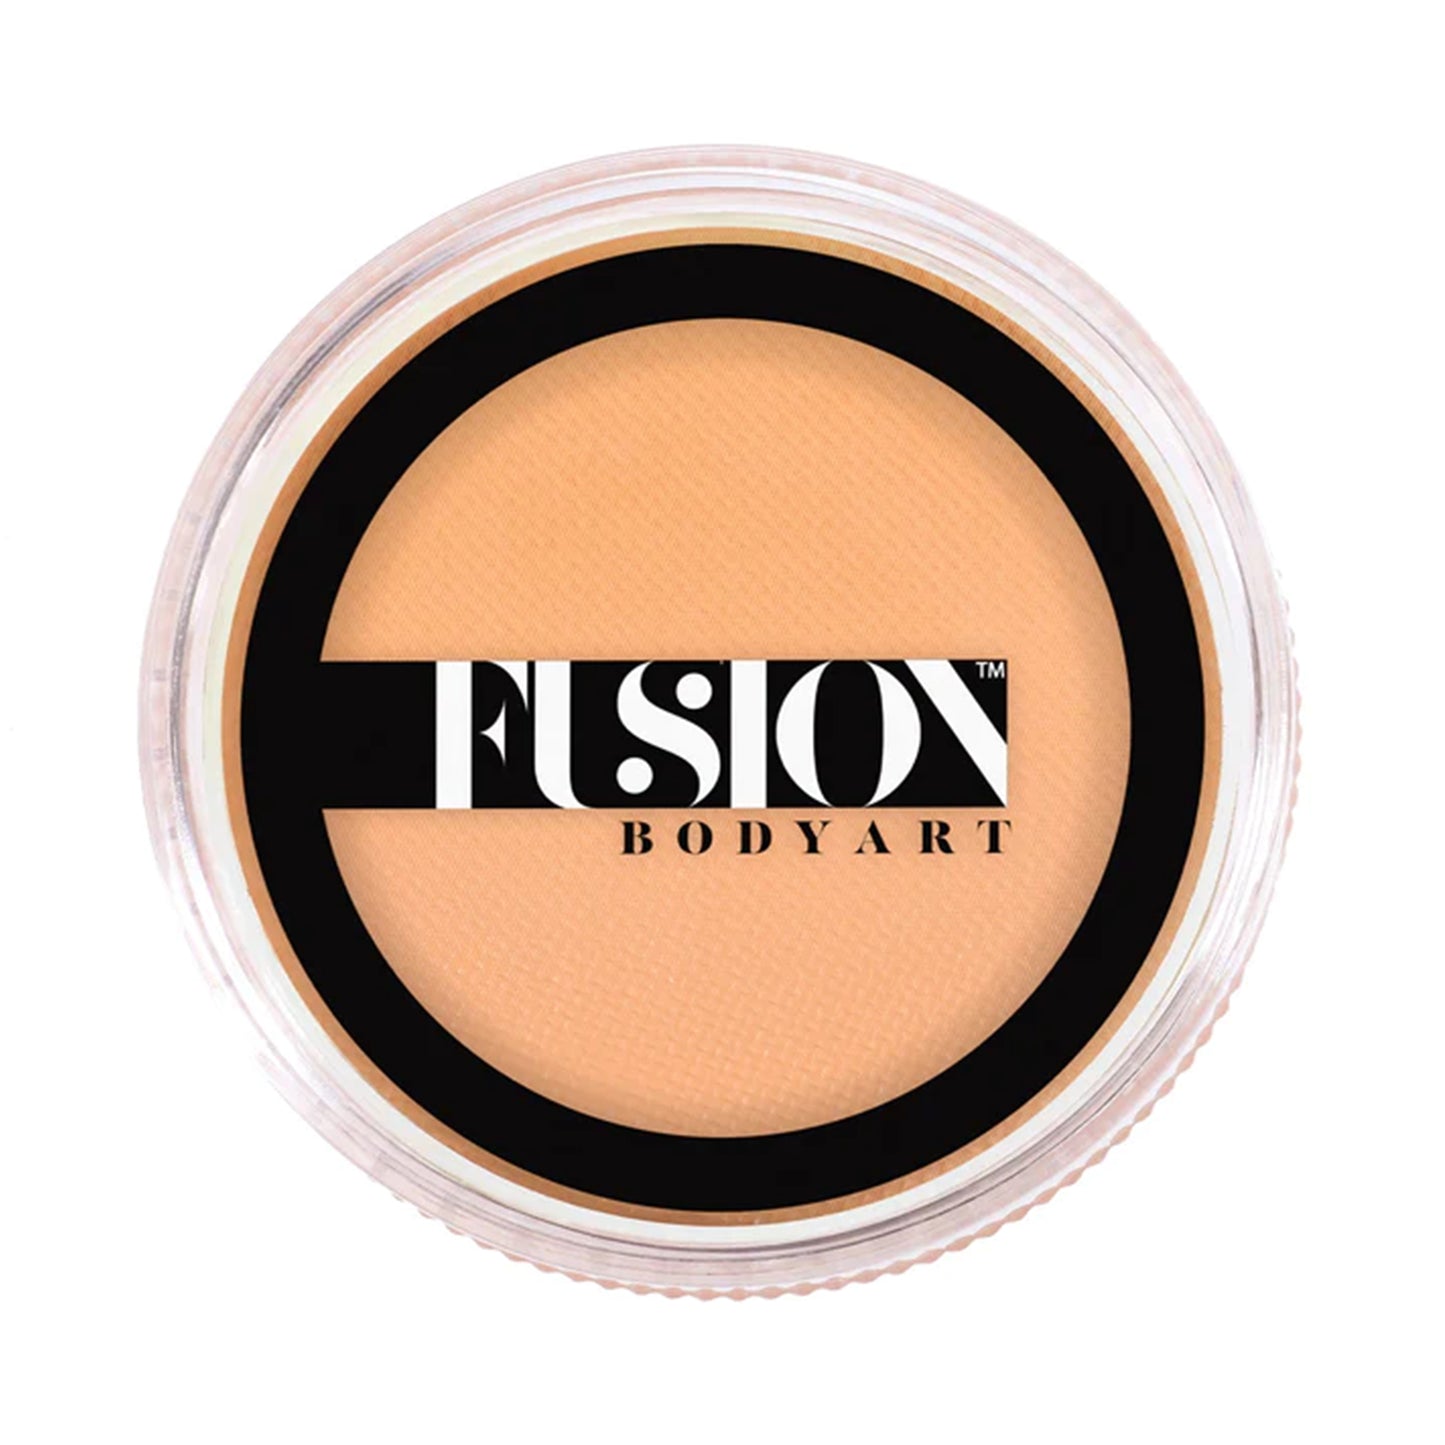 Fusion Body Art Face & Body Paint - Prime Pastel Orange (32 gm)